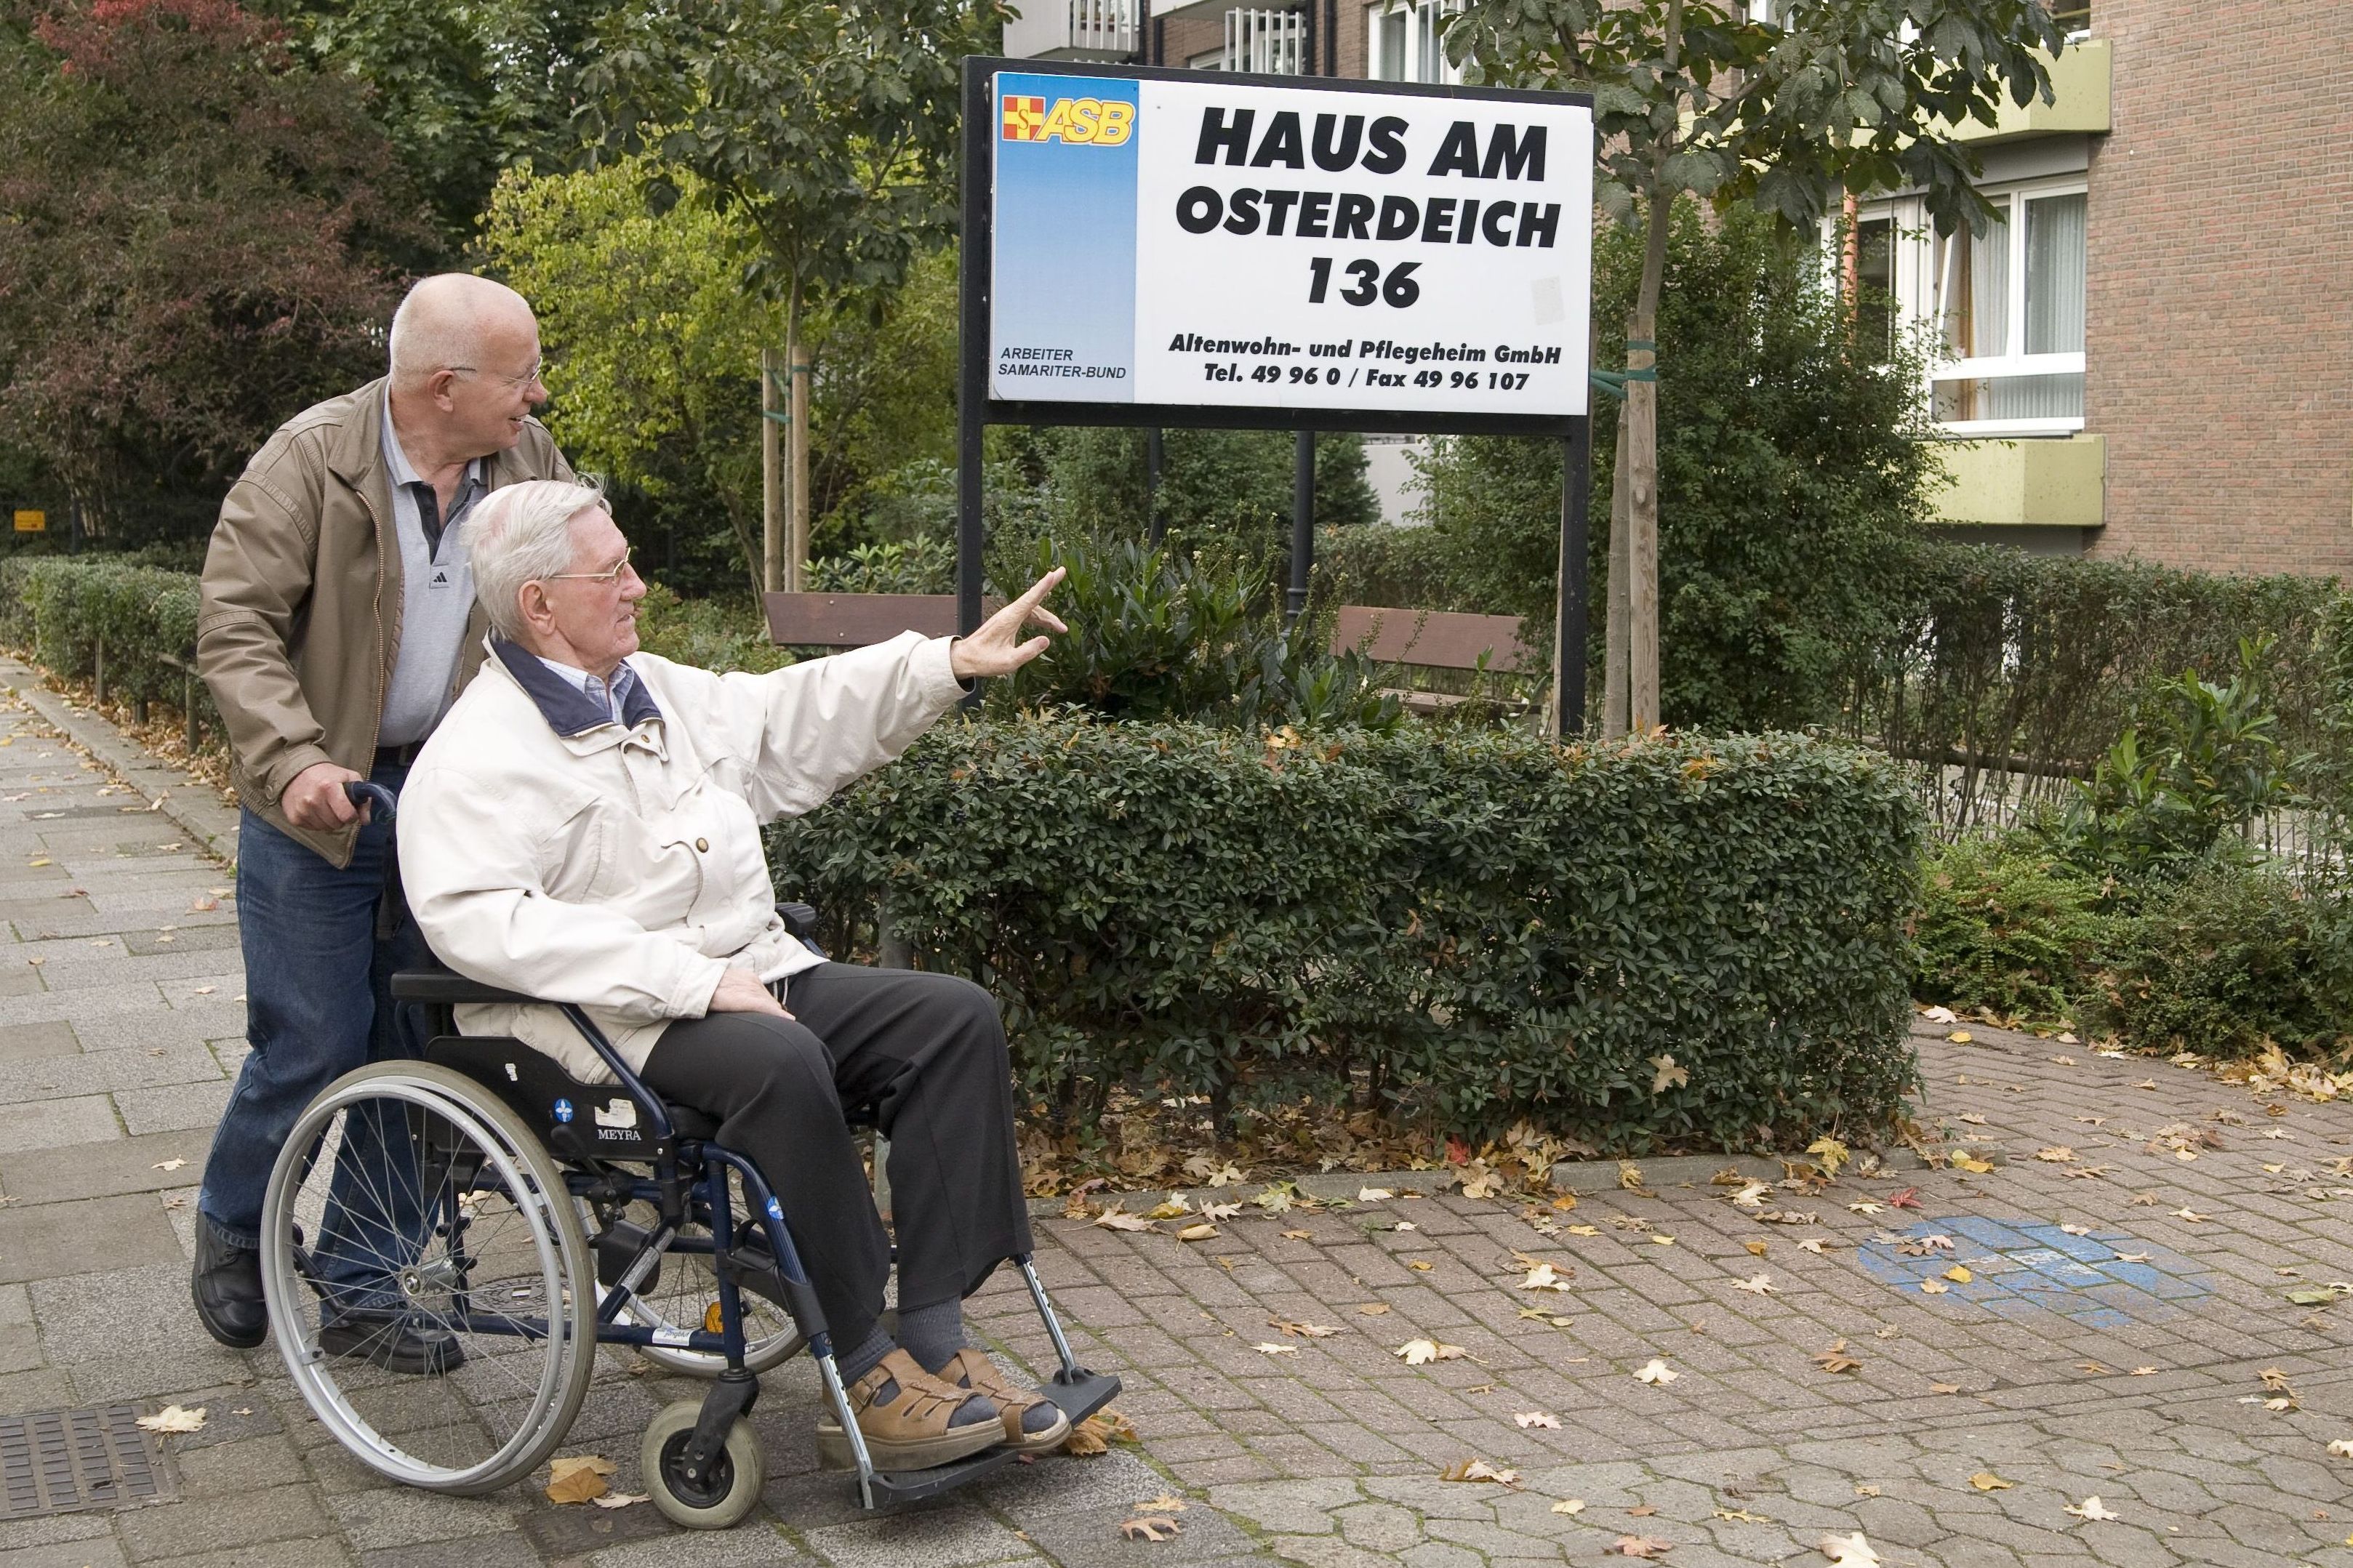 Ein Mann schiebt einen älteren Herrn im Rollstuhl durch einen Park. Gerade kommen sie am Hinweisschild auf die ASB-Seniorenresidenz vorbei